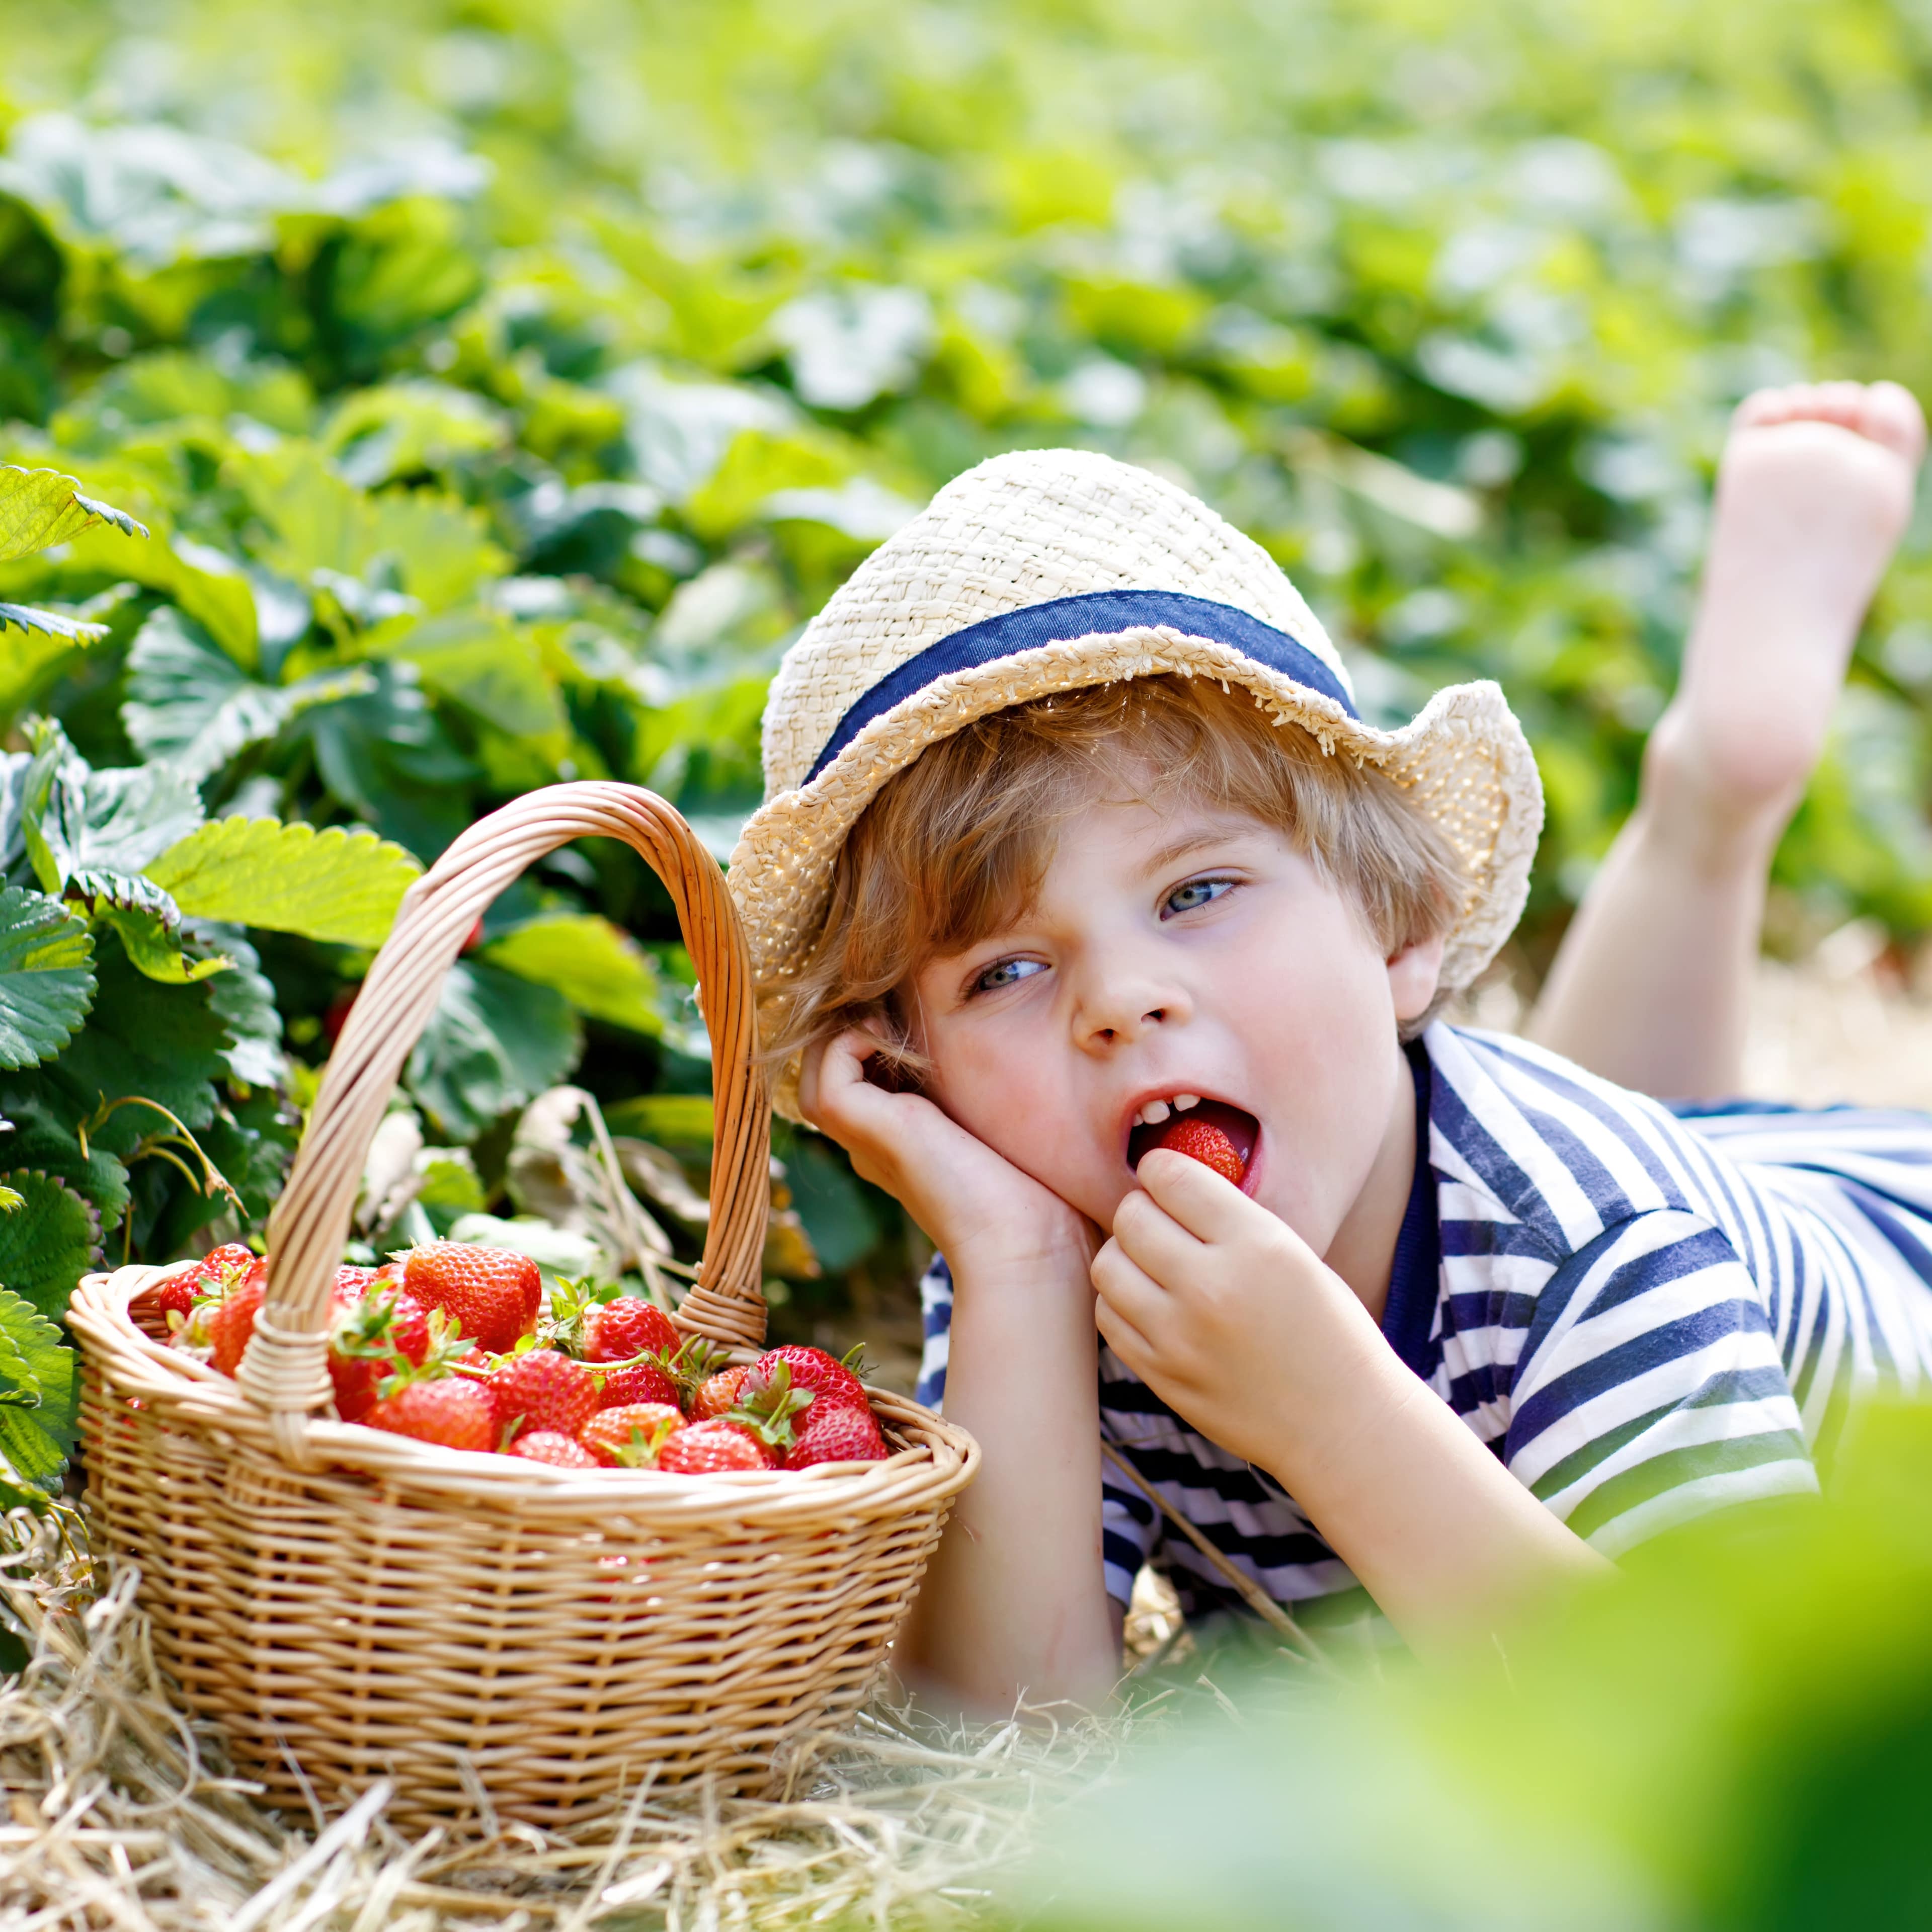 Junge liegt in einem Erdbeerfeld neben einem Korb Erdbeeren und isst eine Erdbeere.